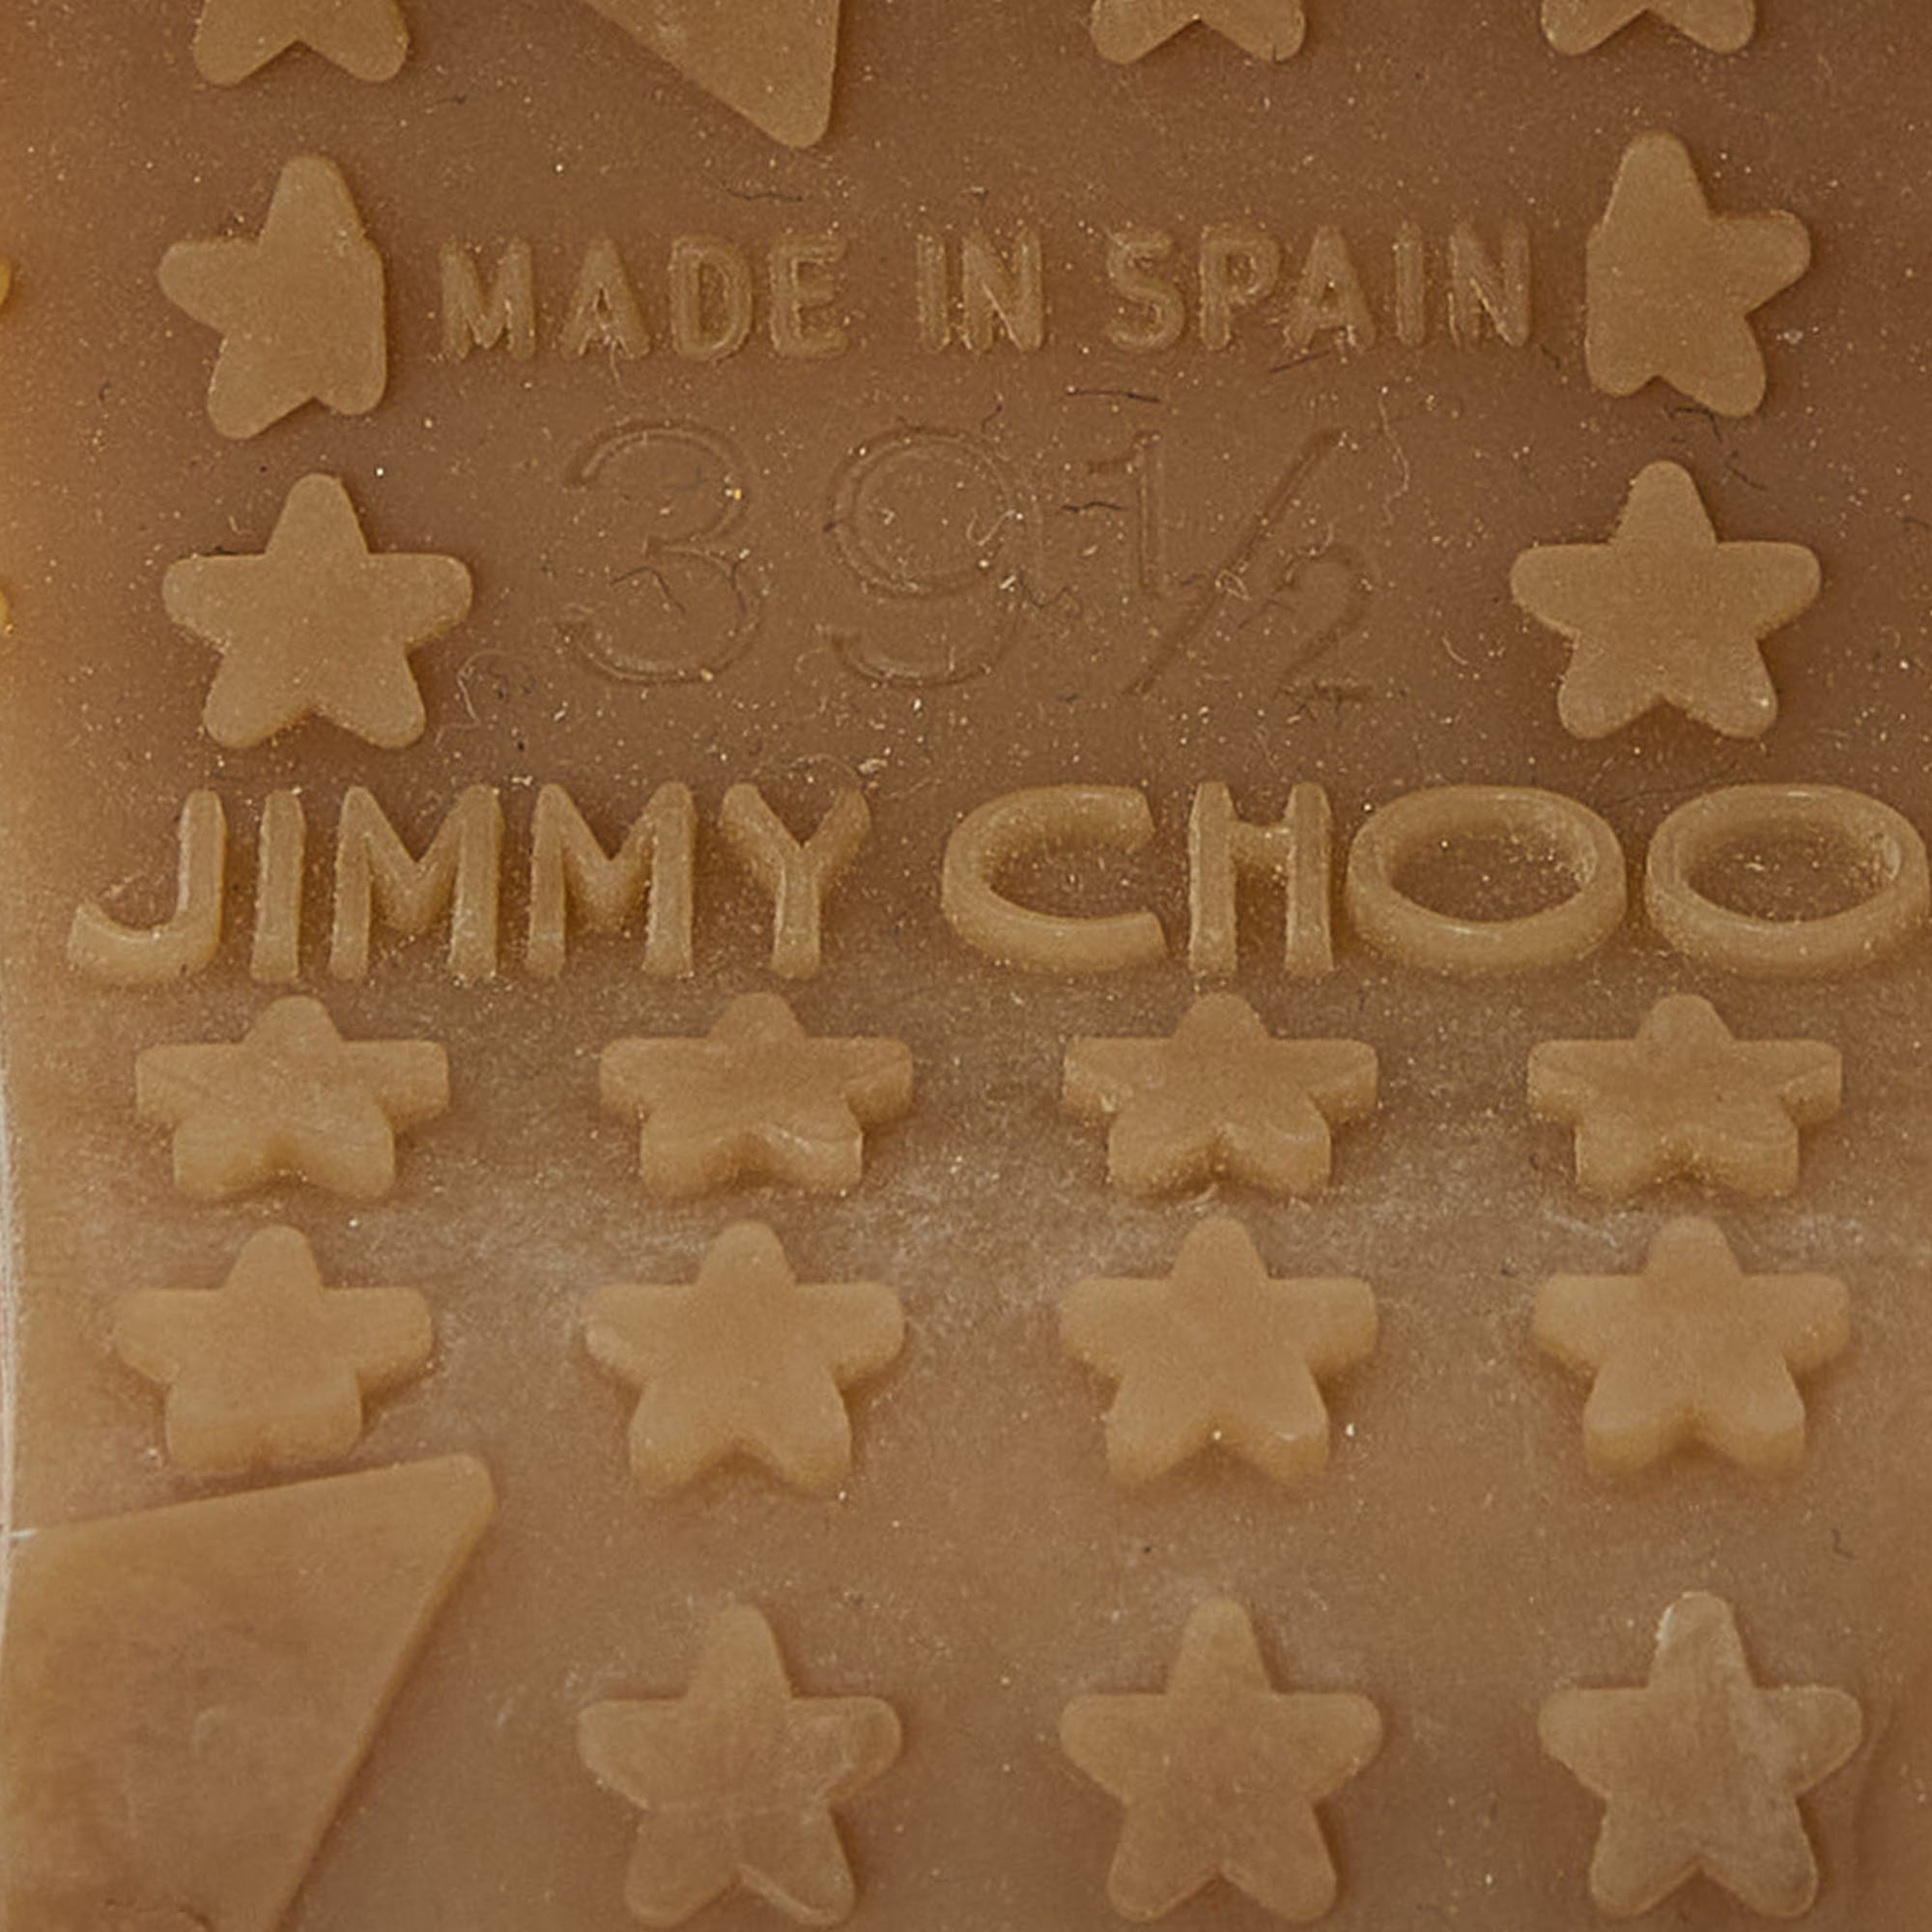 Jimmy Choo Mustard Yellow Patent Leather Pandora Cork Wedges Size 39.5